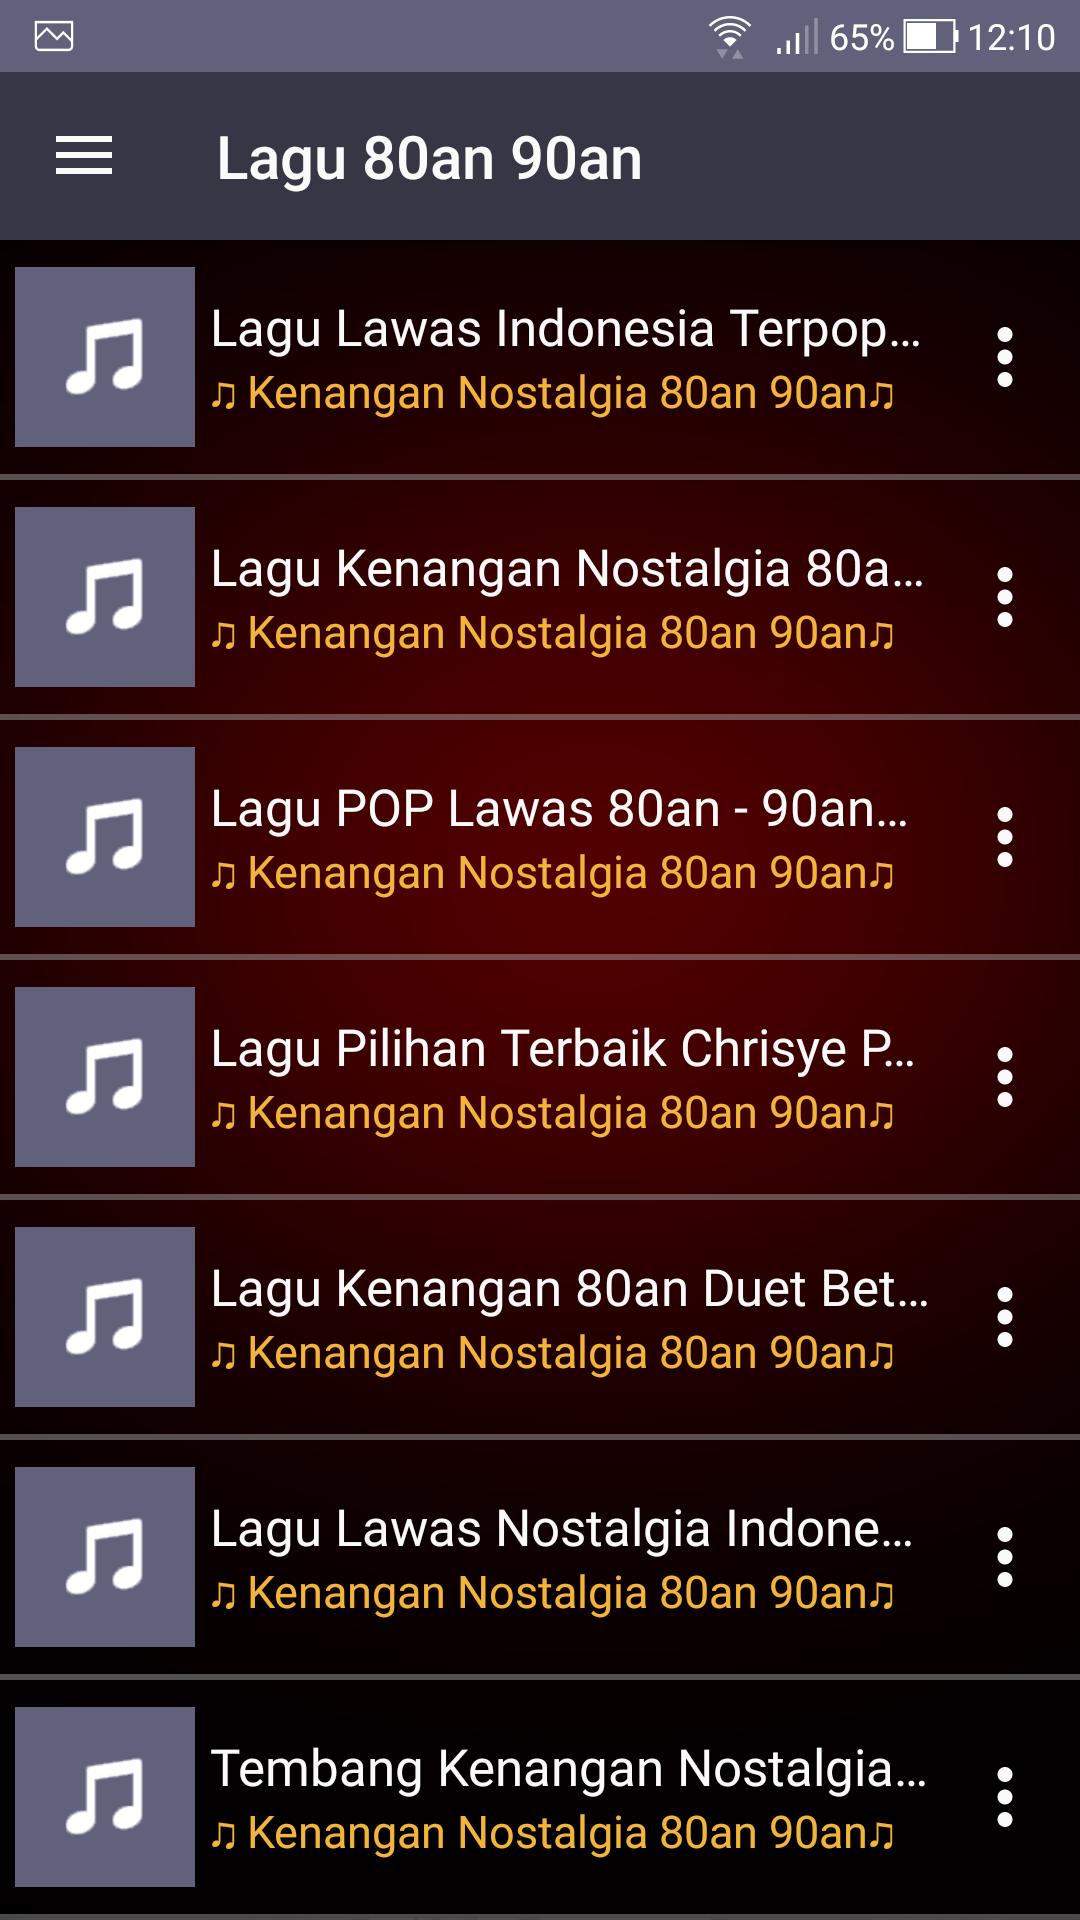 Gudang Lagu Mp3 Gratis Terbaik APK 1.0.1 for Android – Download Gudang Lagu  Mp3 Gratis Terbaik APK Latest Version from APKFab.com